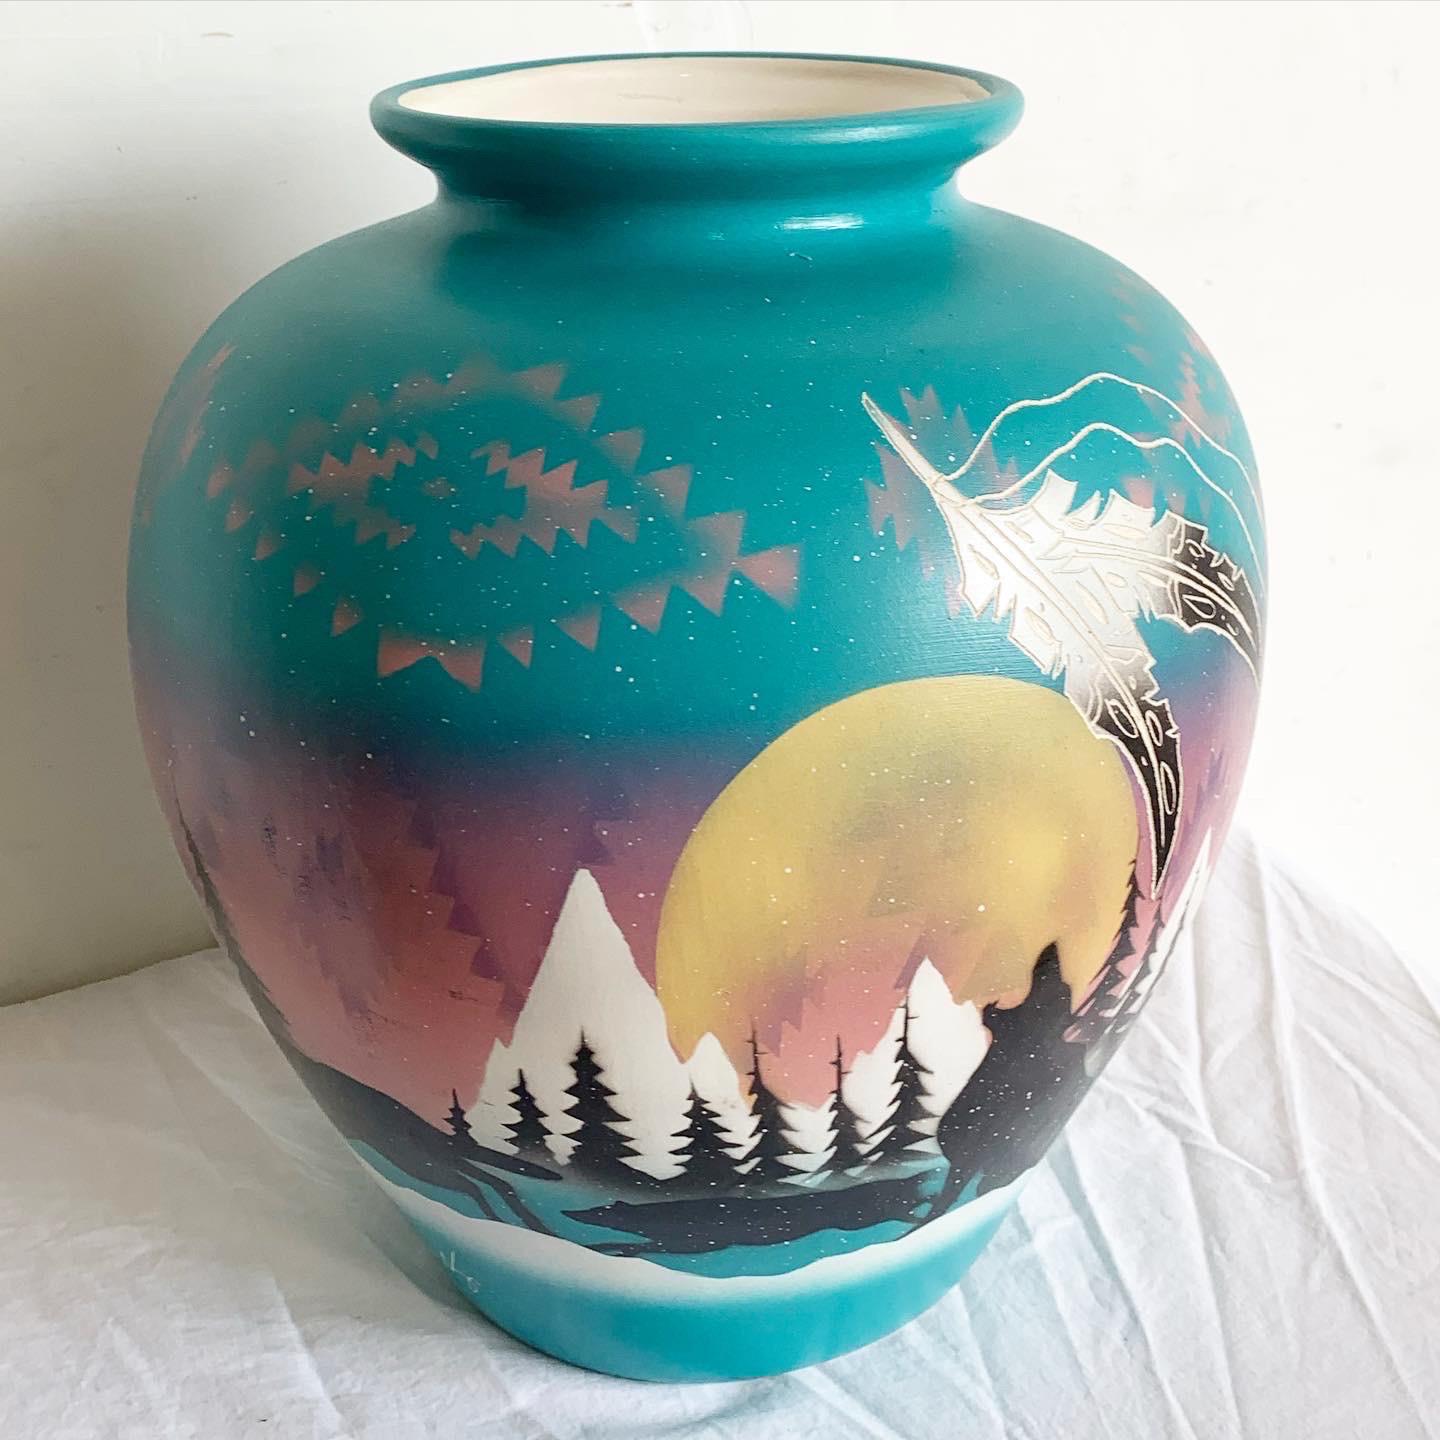 Plongez dans l'art des années 1980 avec ce vase Southwest Pottery. Peint à la main dans une teinte verte vibrante, il représente un loup solitaire dans un paysage de montagne au clair de lune. Cette représentation, fusionnant nature et folklore,